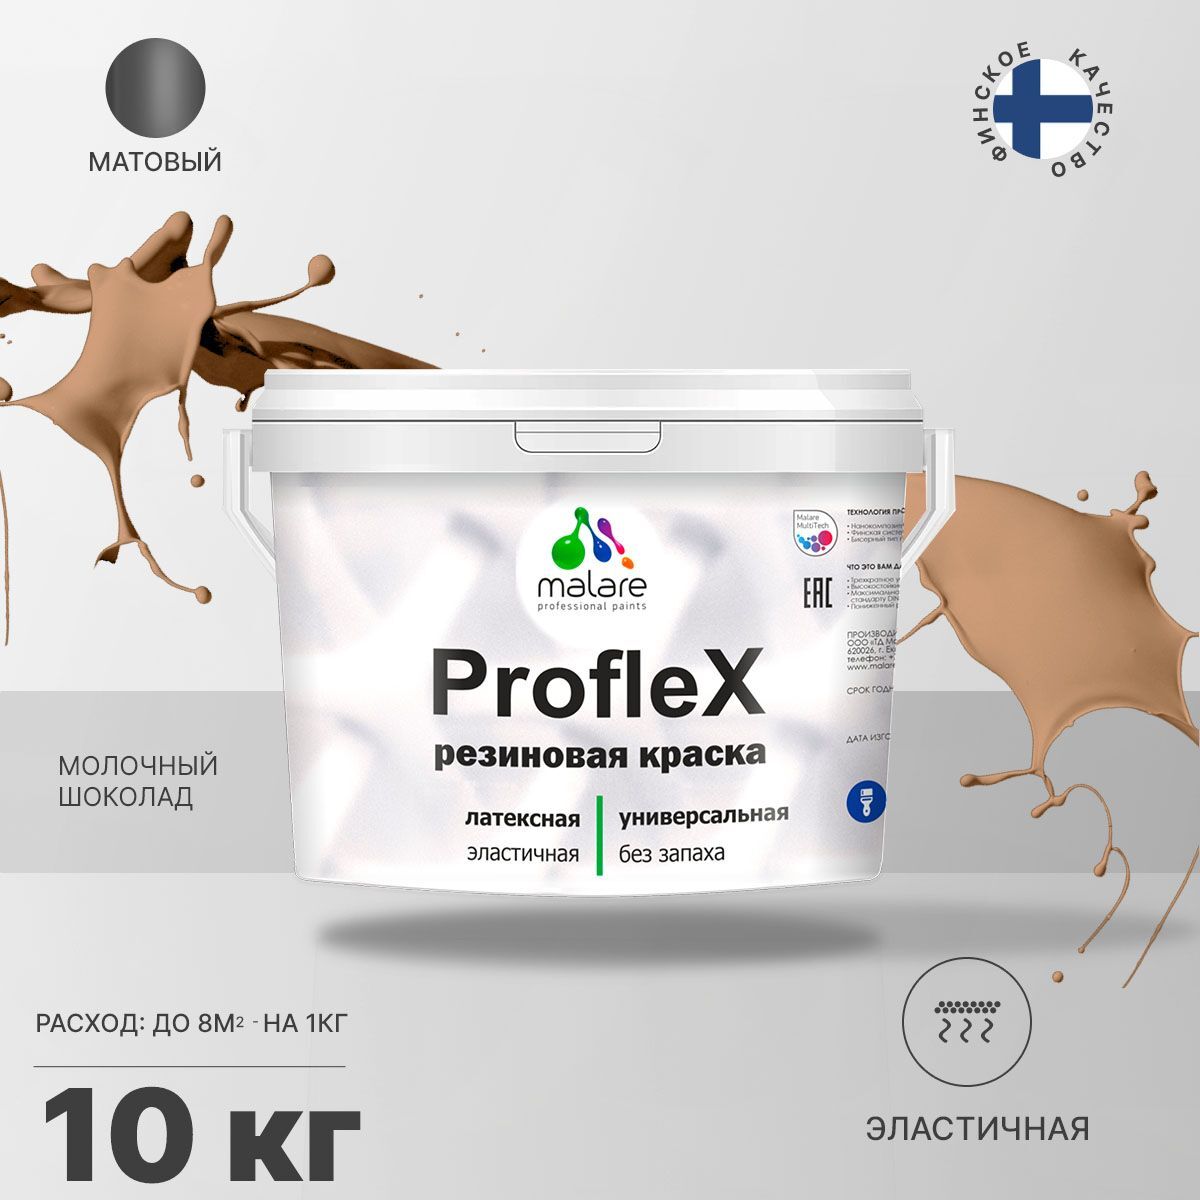 Краска Malare ProfleX резиновая Акриловая, Латексная, Полиуретановая, 10 кг молочный шоколад